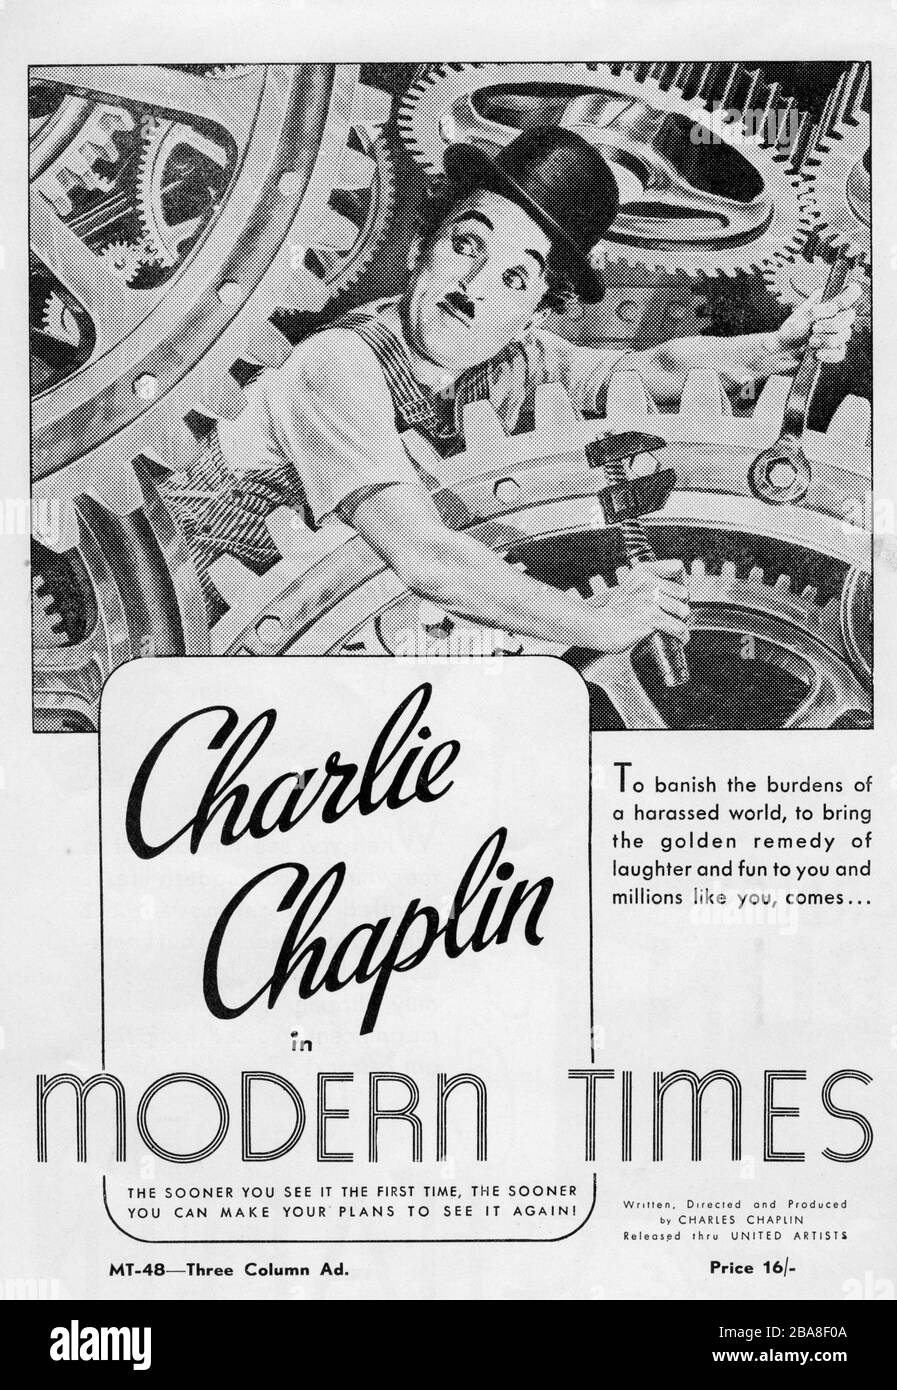 CHARLIE CHAPLIN come il Tramp IN MODERN TIMES 1936 regista / produttore / scrittore / musica CHARLES CHAPLIN Silent film con effetti sonori Charles Chaplin Productions / United Artists Foto Stock